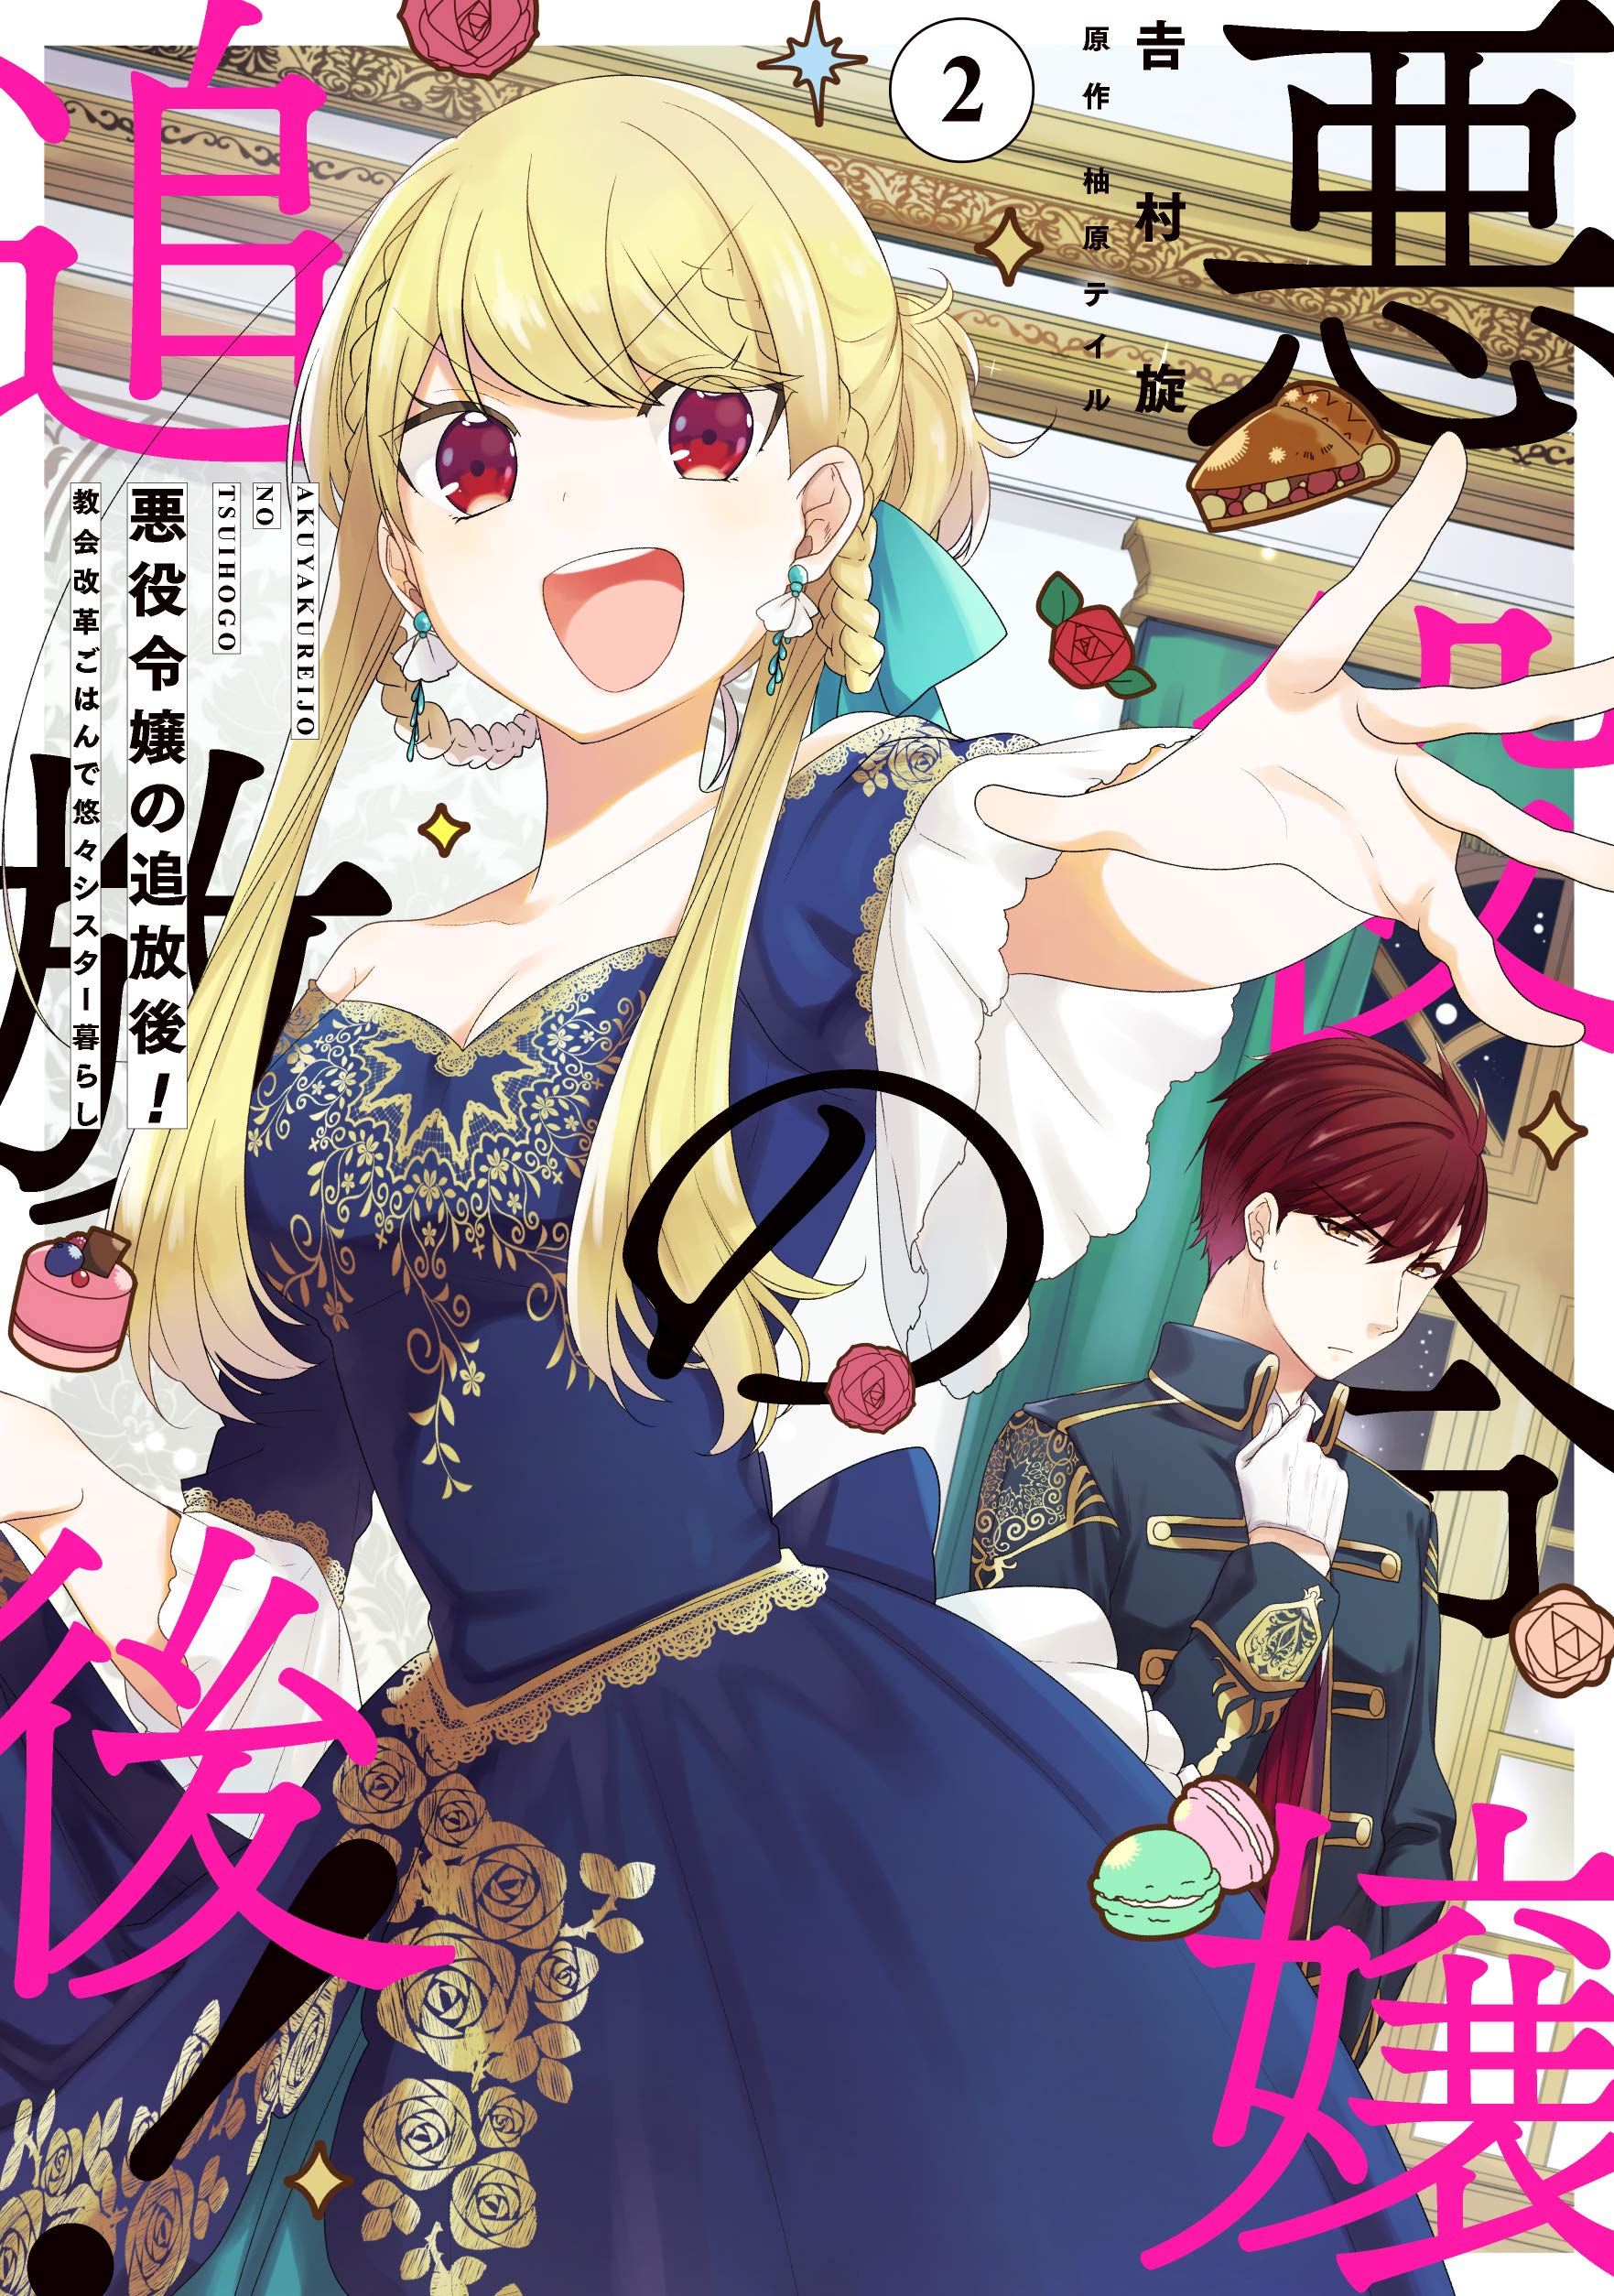 SL Request] Yuusha ga Shinda! - Kami no Kuni-hen : r/manga